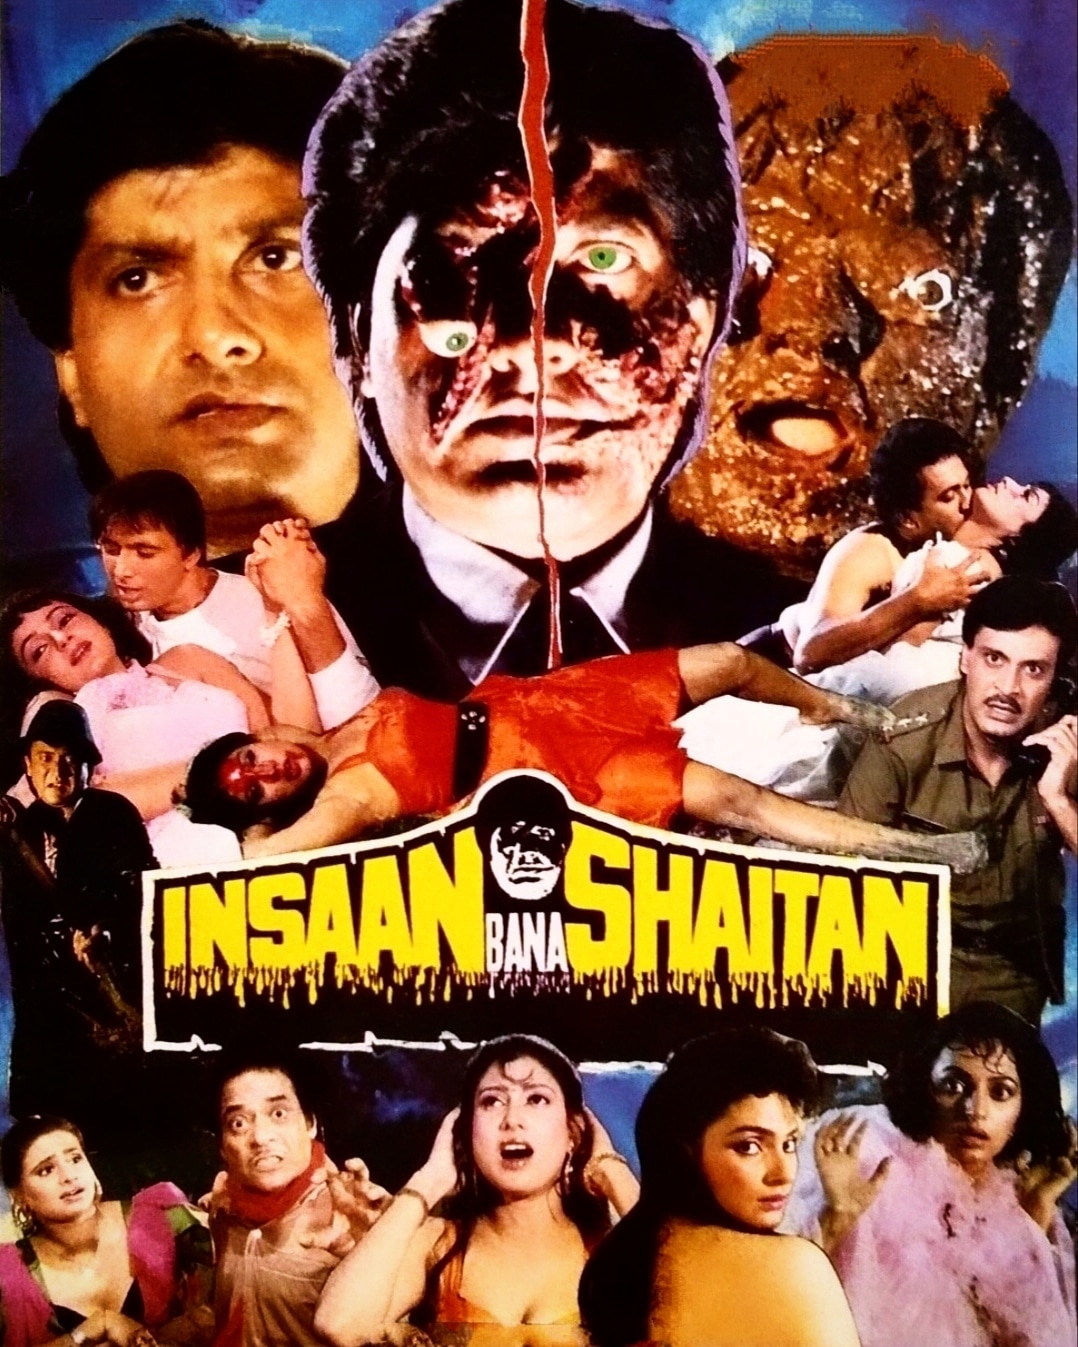 Insaan Bana Shaitan Horror movie from bollywood